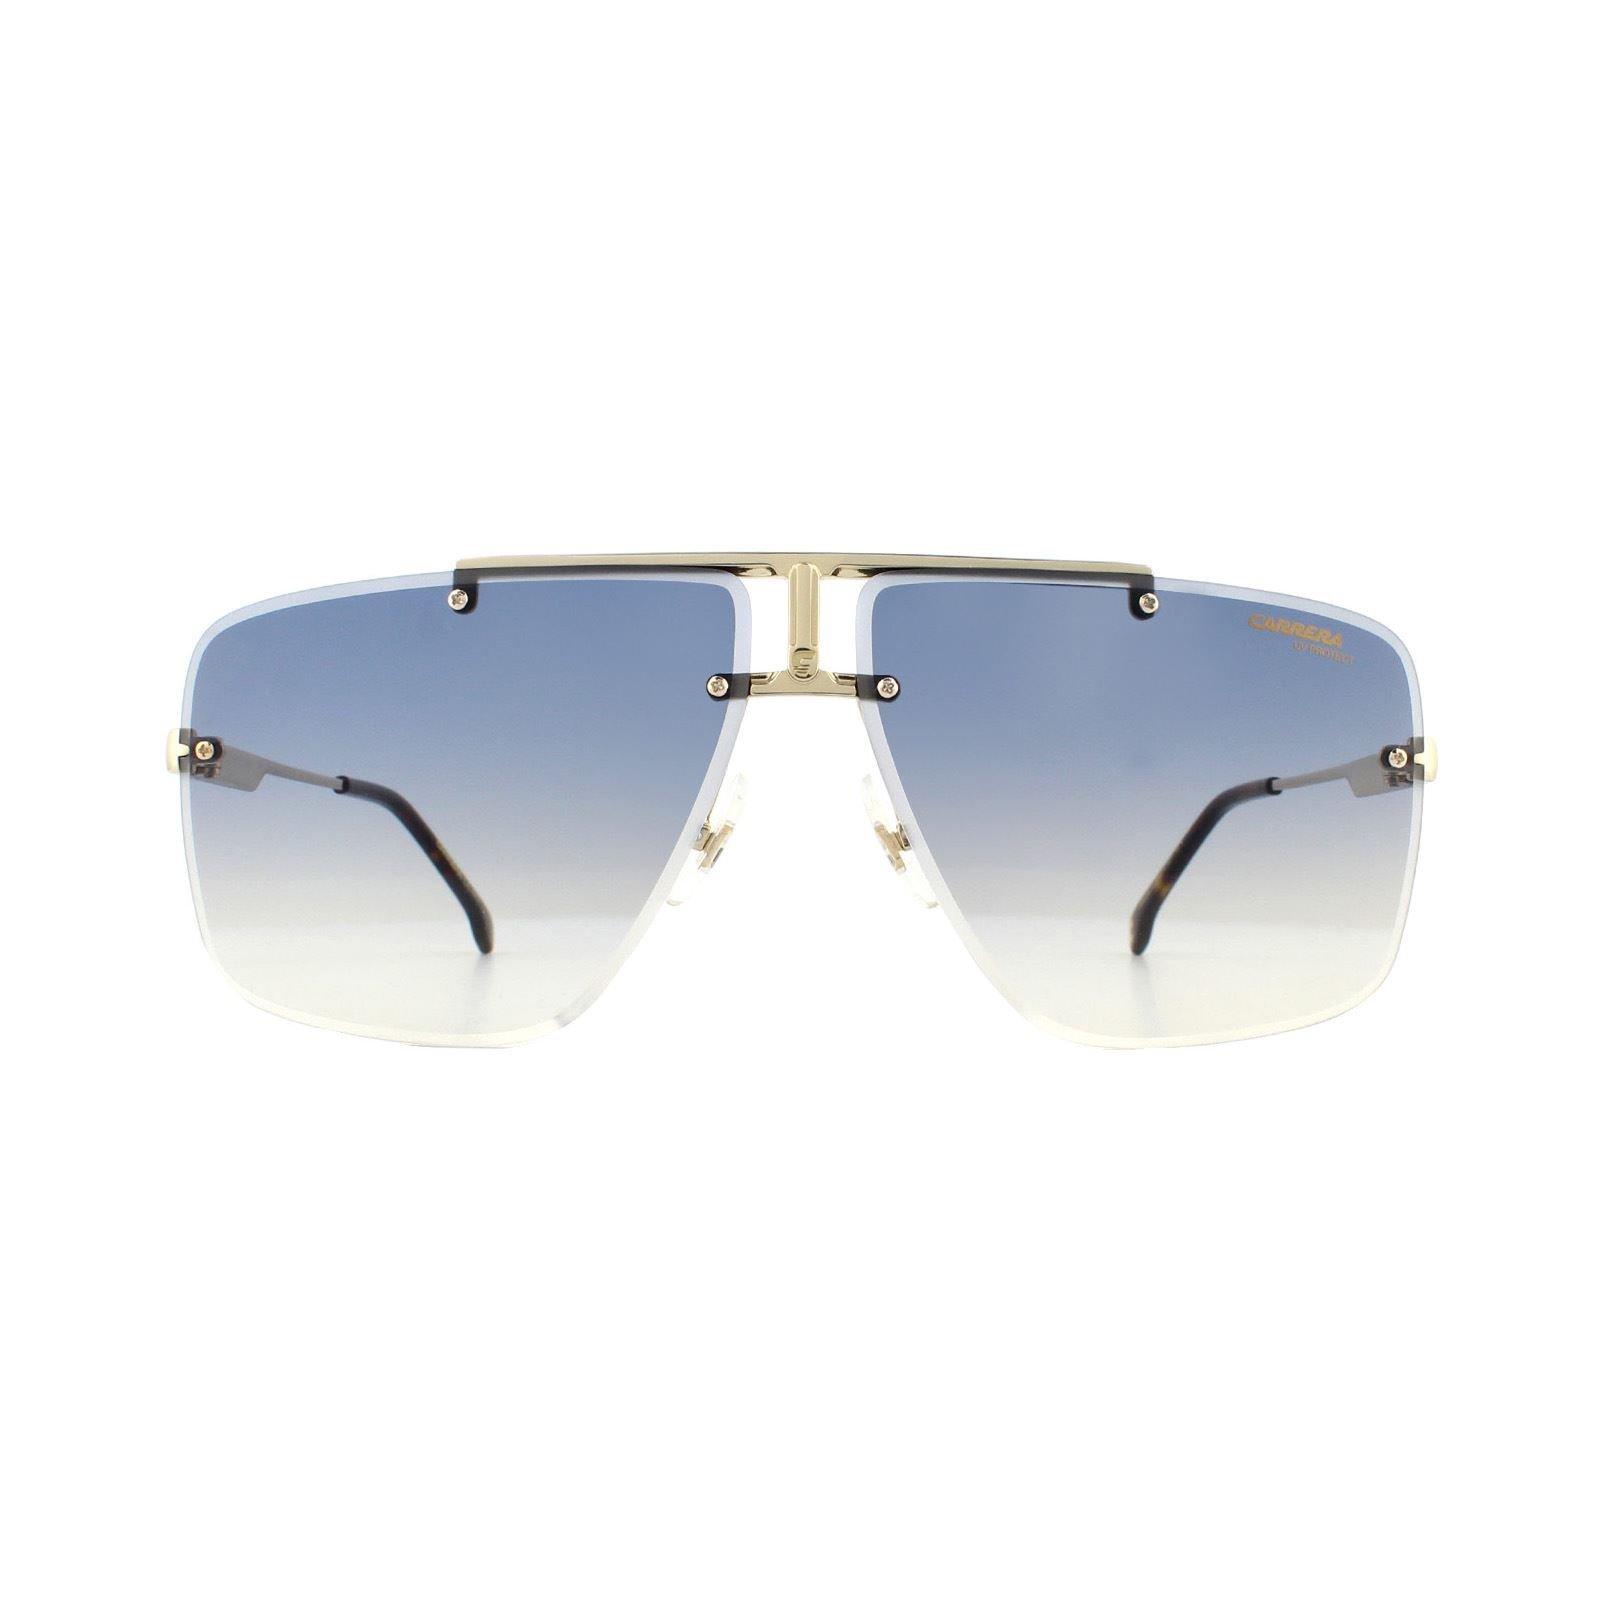 Темно-синие солнцезащитные очки без оправы из желтого золота с градиентом Carrera, золото пульт к broksonic m50560 001 c